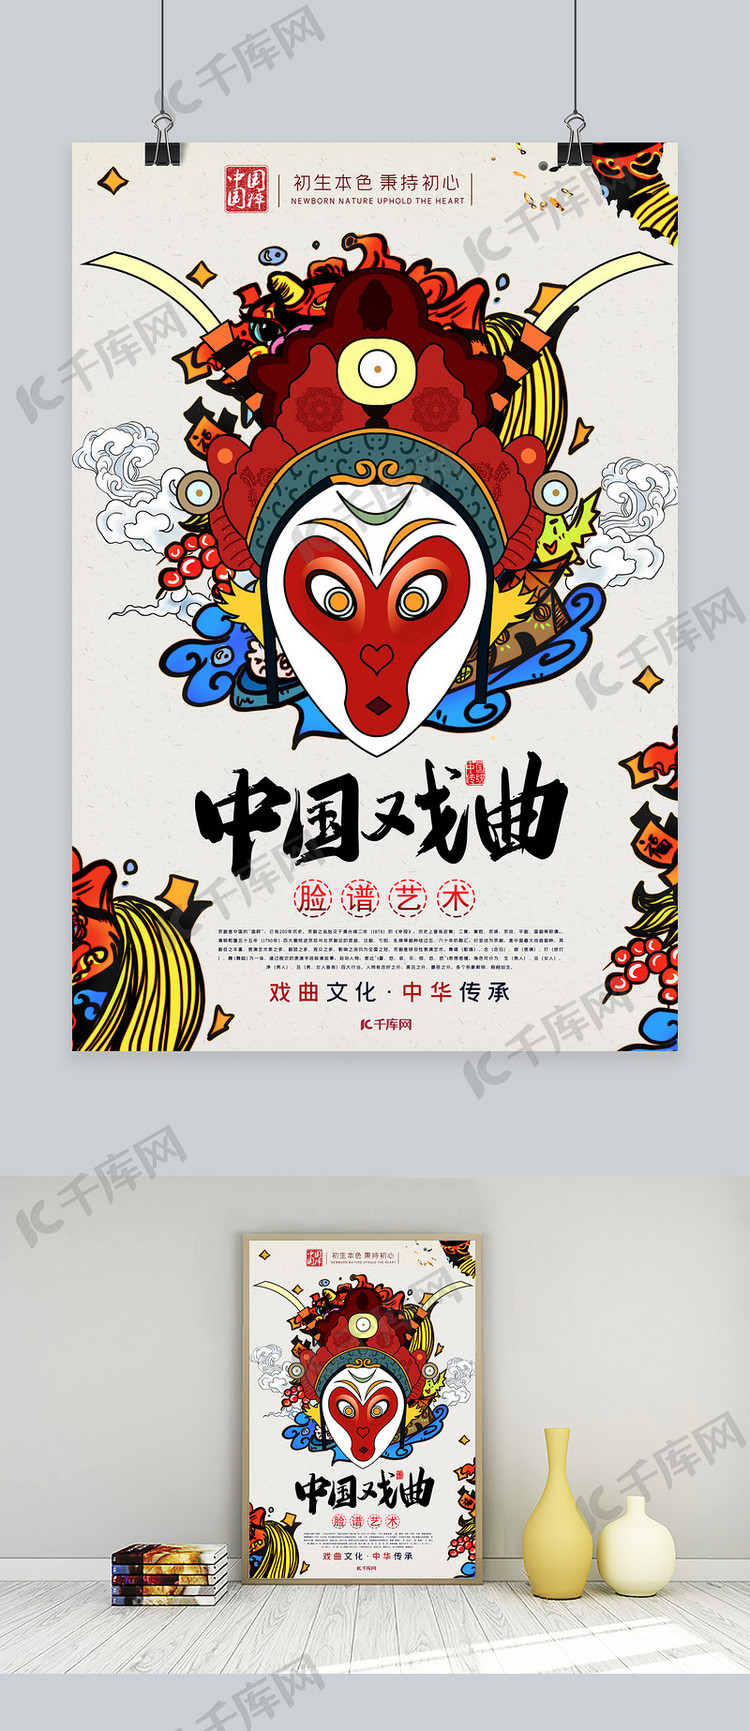 戏曲文化中国风脸谱艺术宣传海报